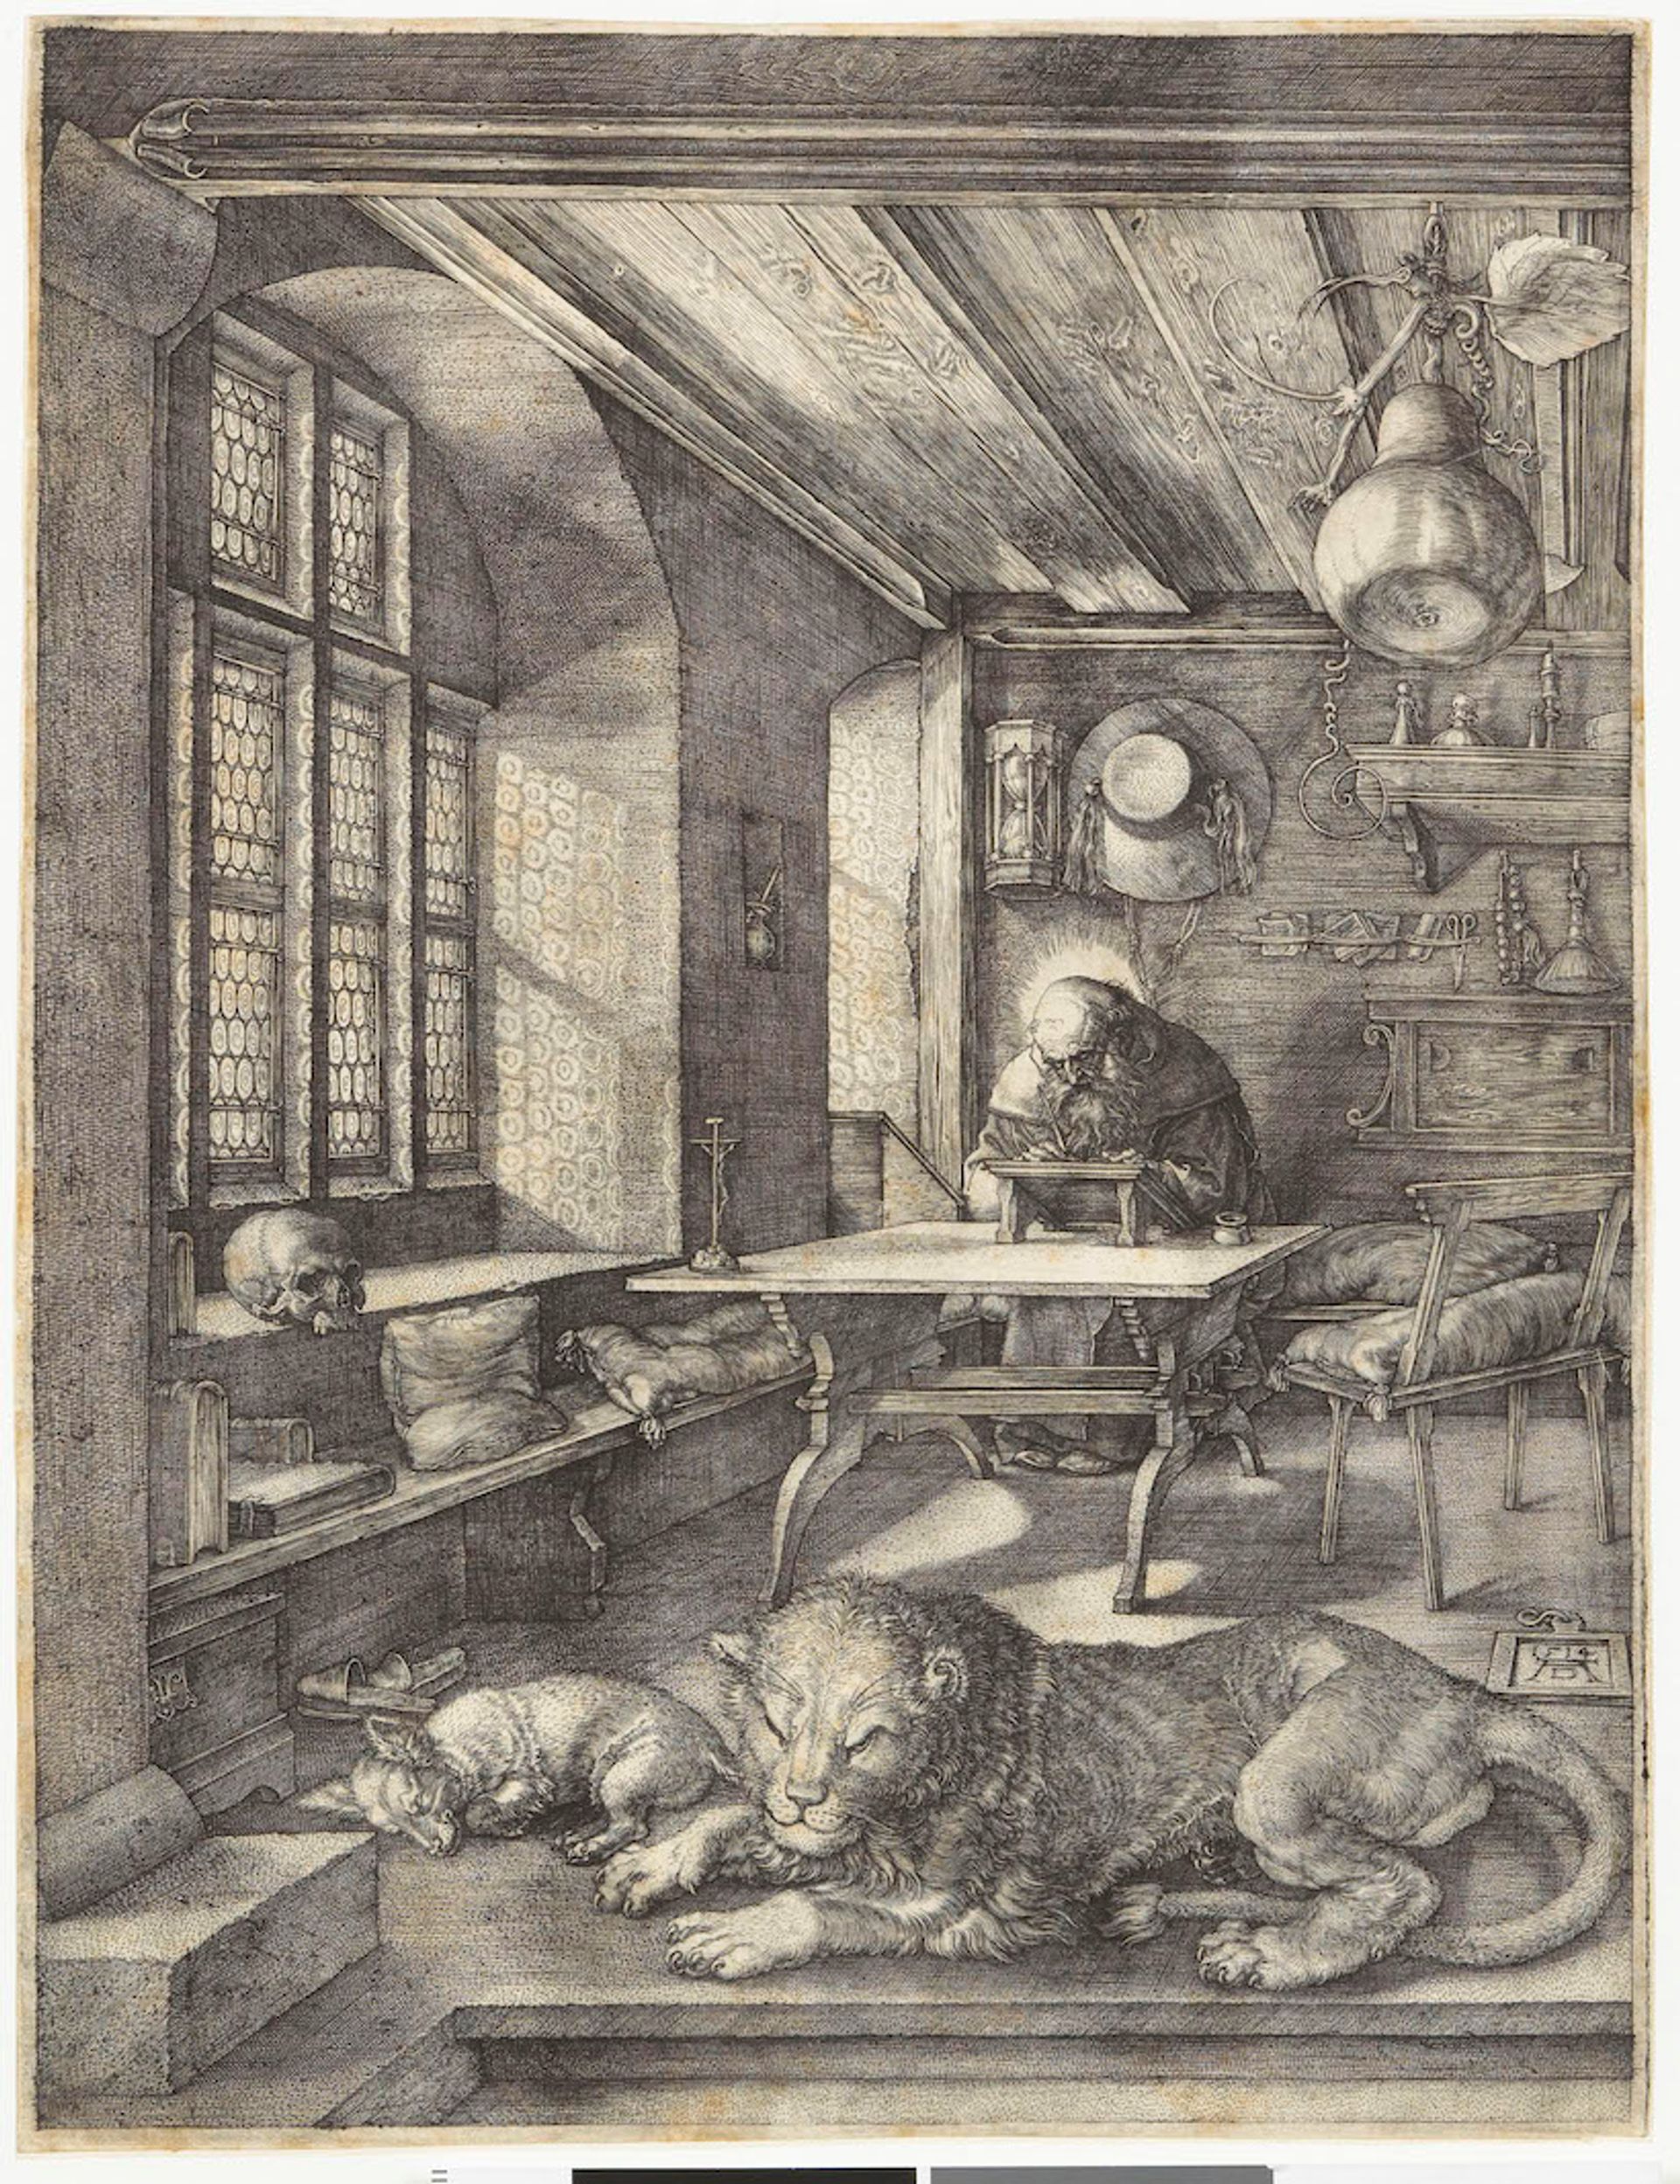 Albrecht Dürer, Saint Jérôme dans sa cellule, 1514, burin, musée Condé, EST 234